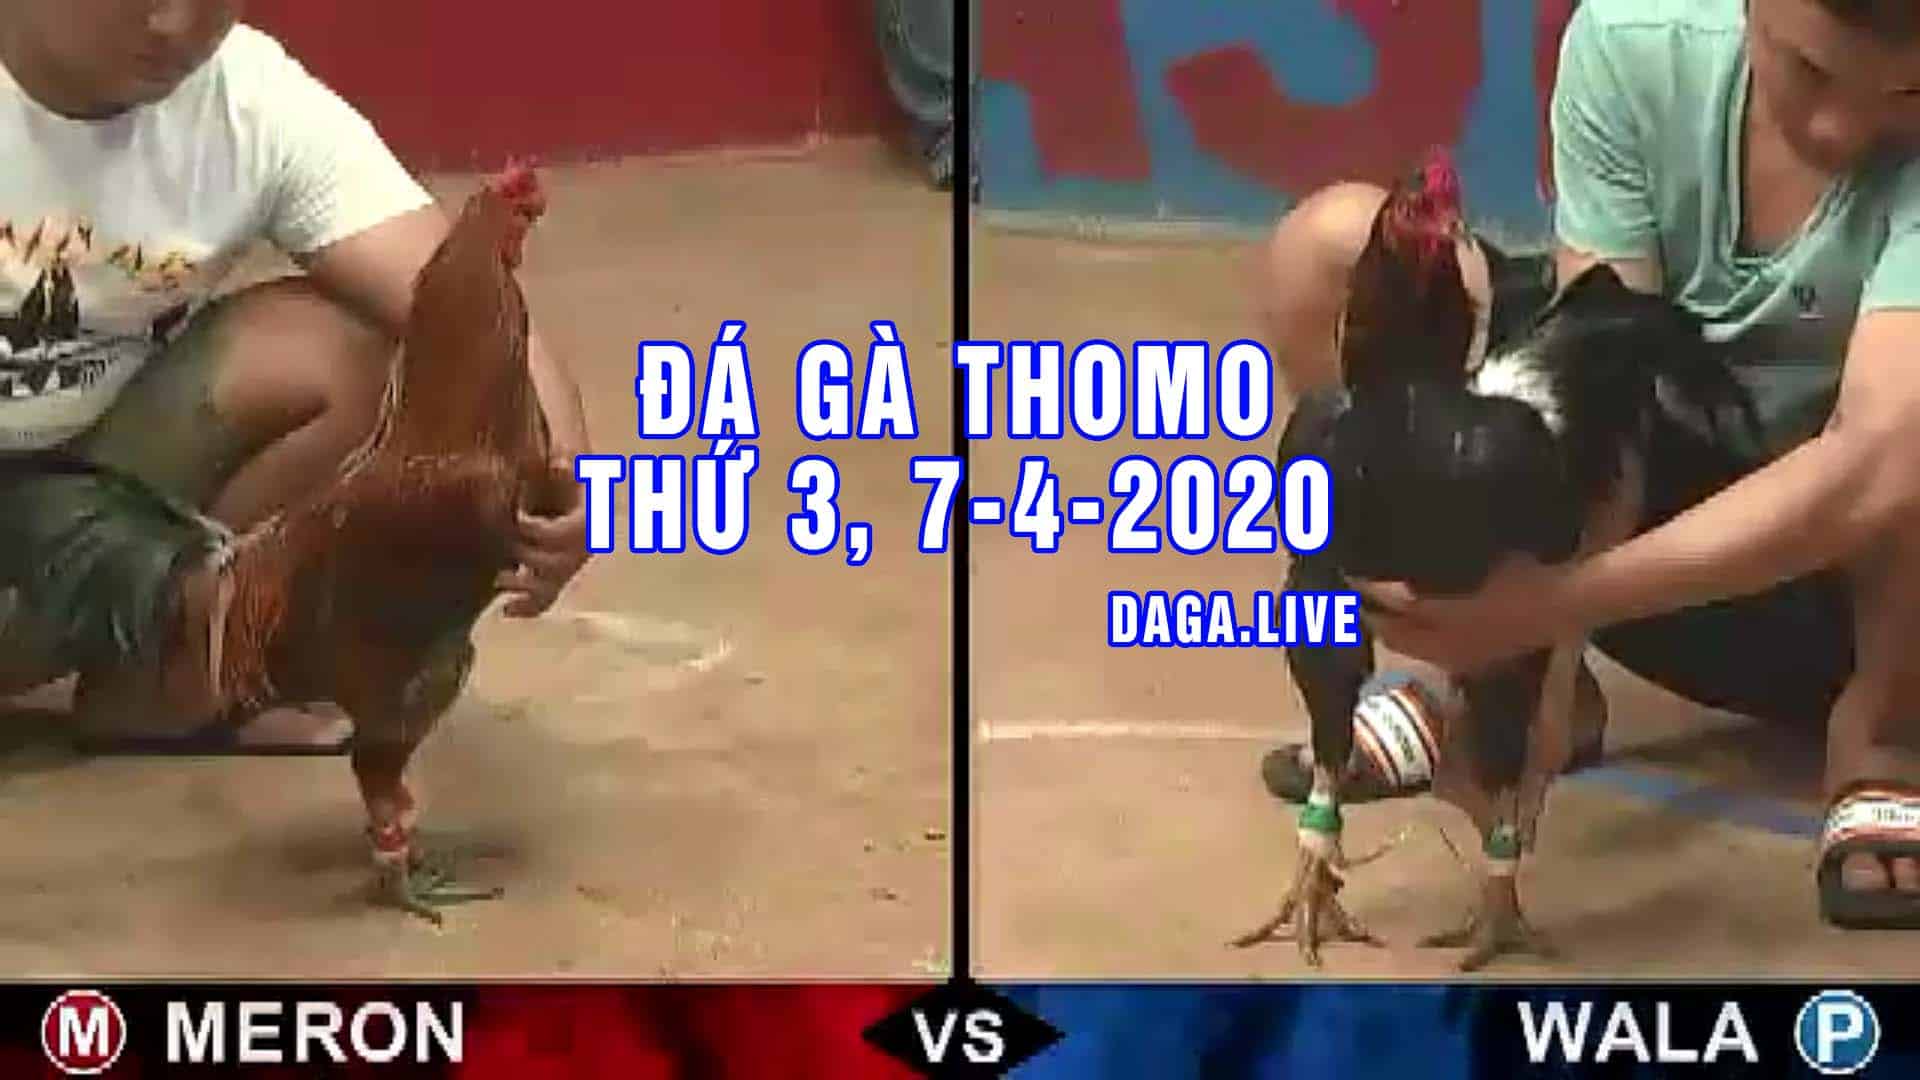 DAGA.LIVE - Đá gà trực tiếp thomo hôm nay, đá gà thomo, đá gà camuchia, đá gà cựa sắt thứ 3 ngày 7-4-2020